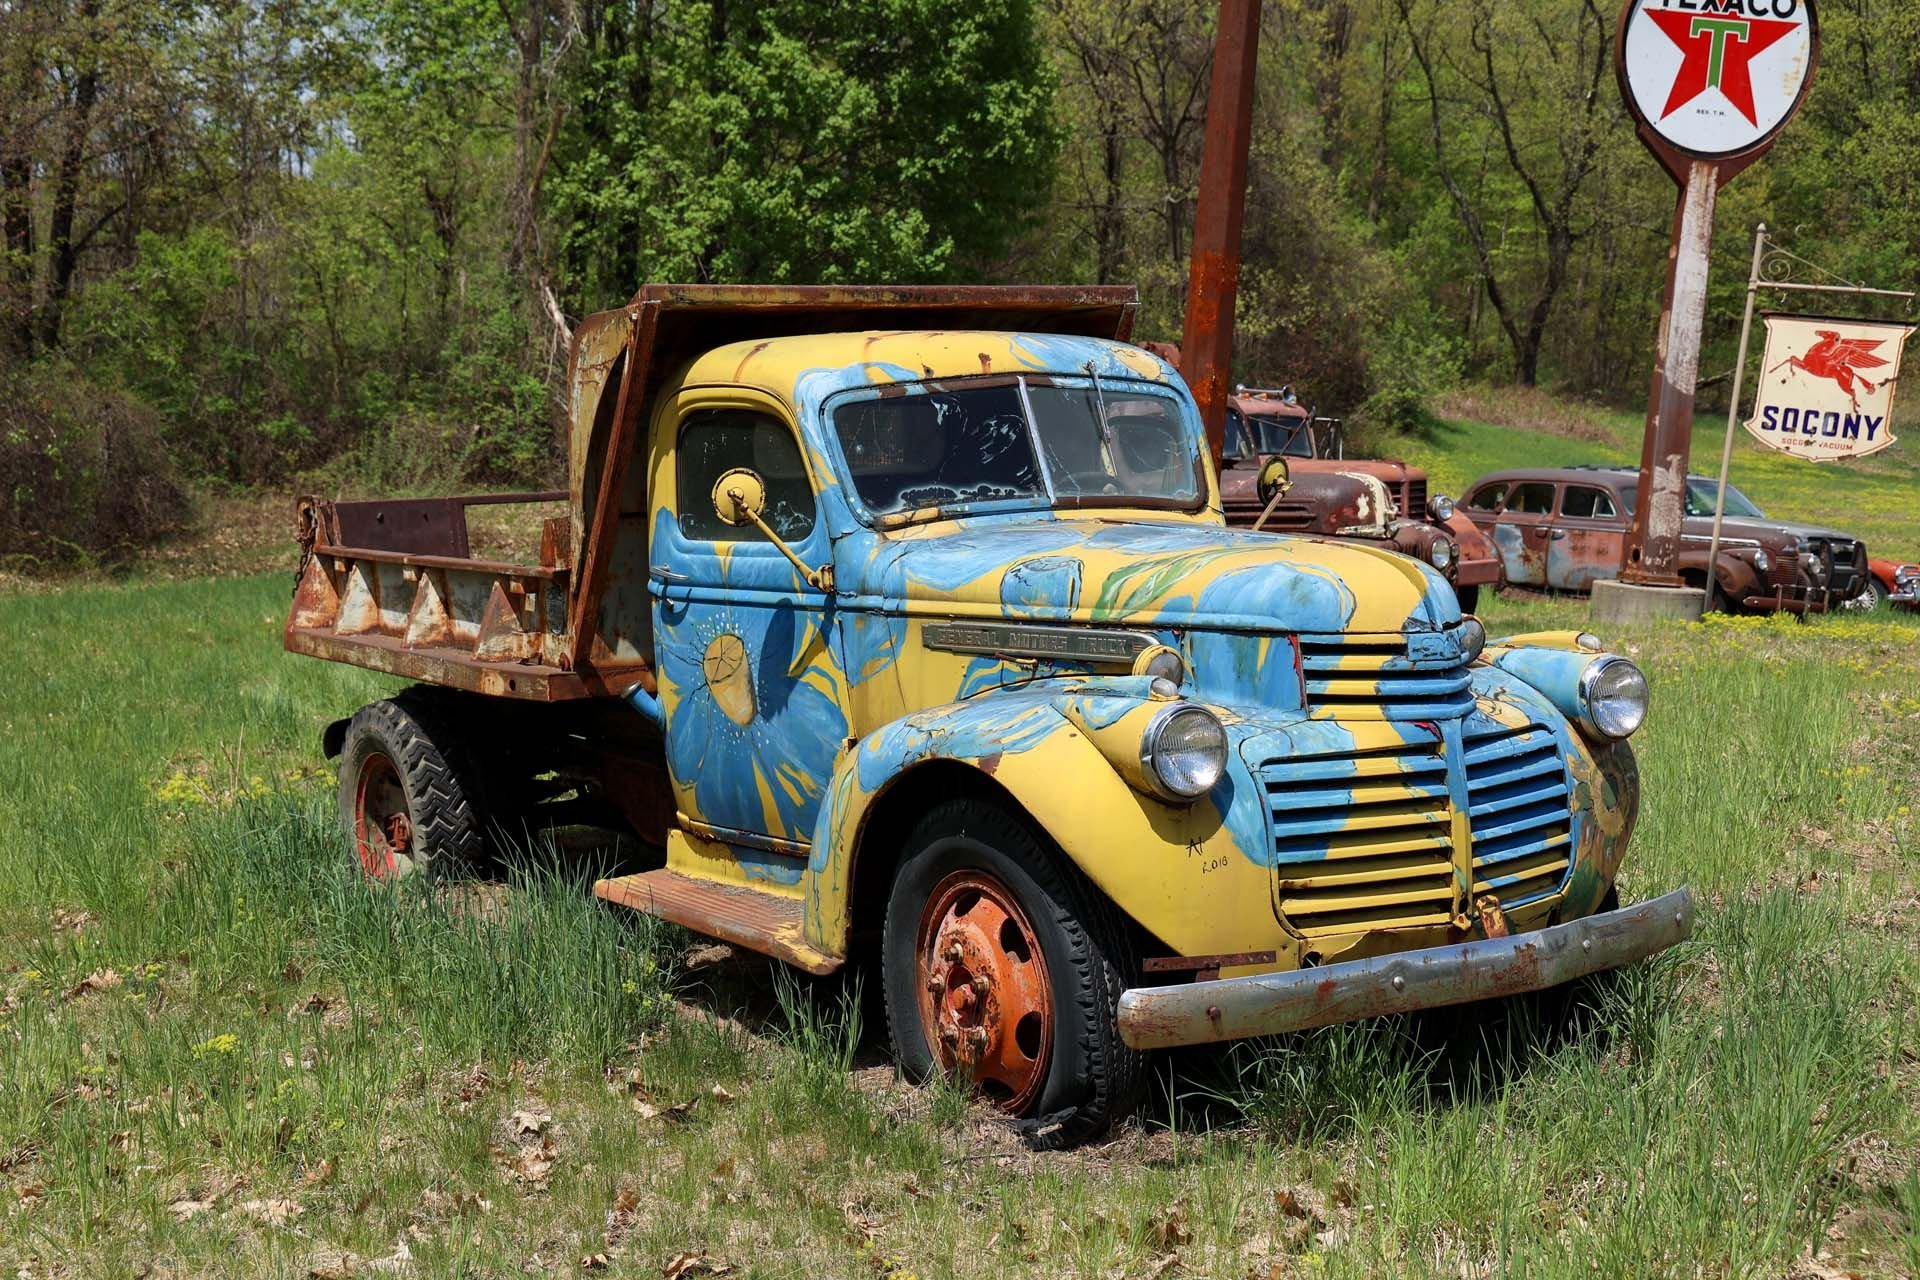 For Sale 1940 GMC Dump Truck 'Yard Art'